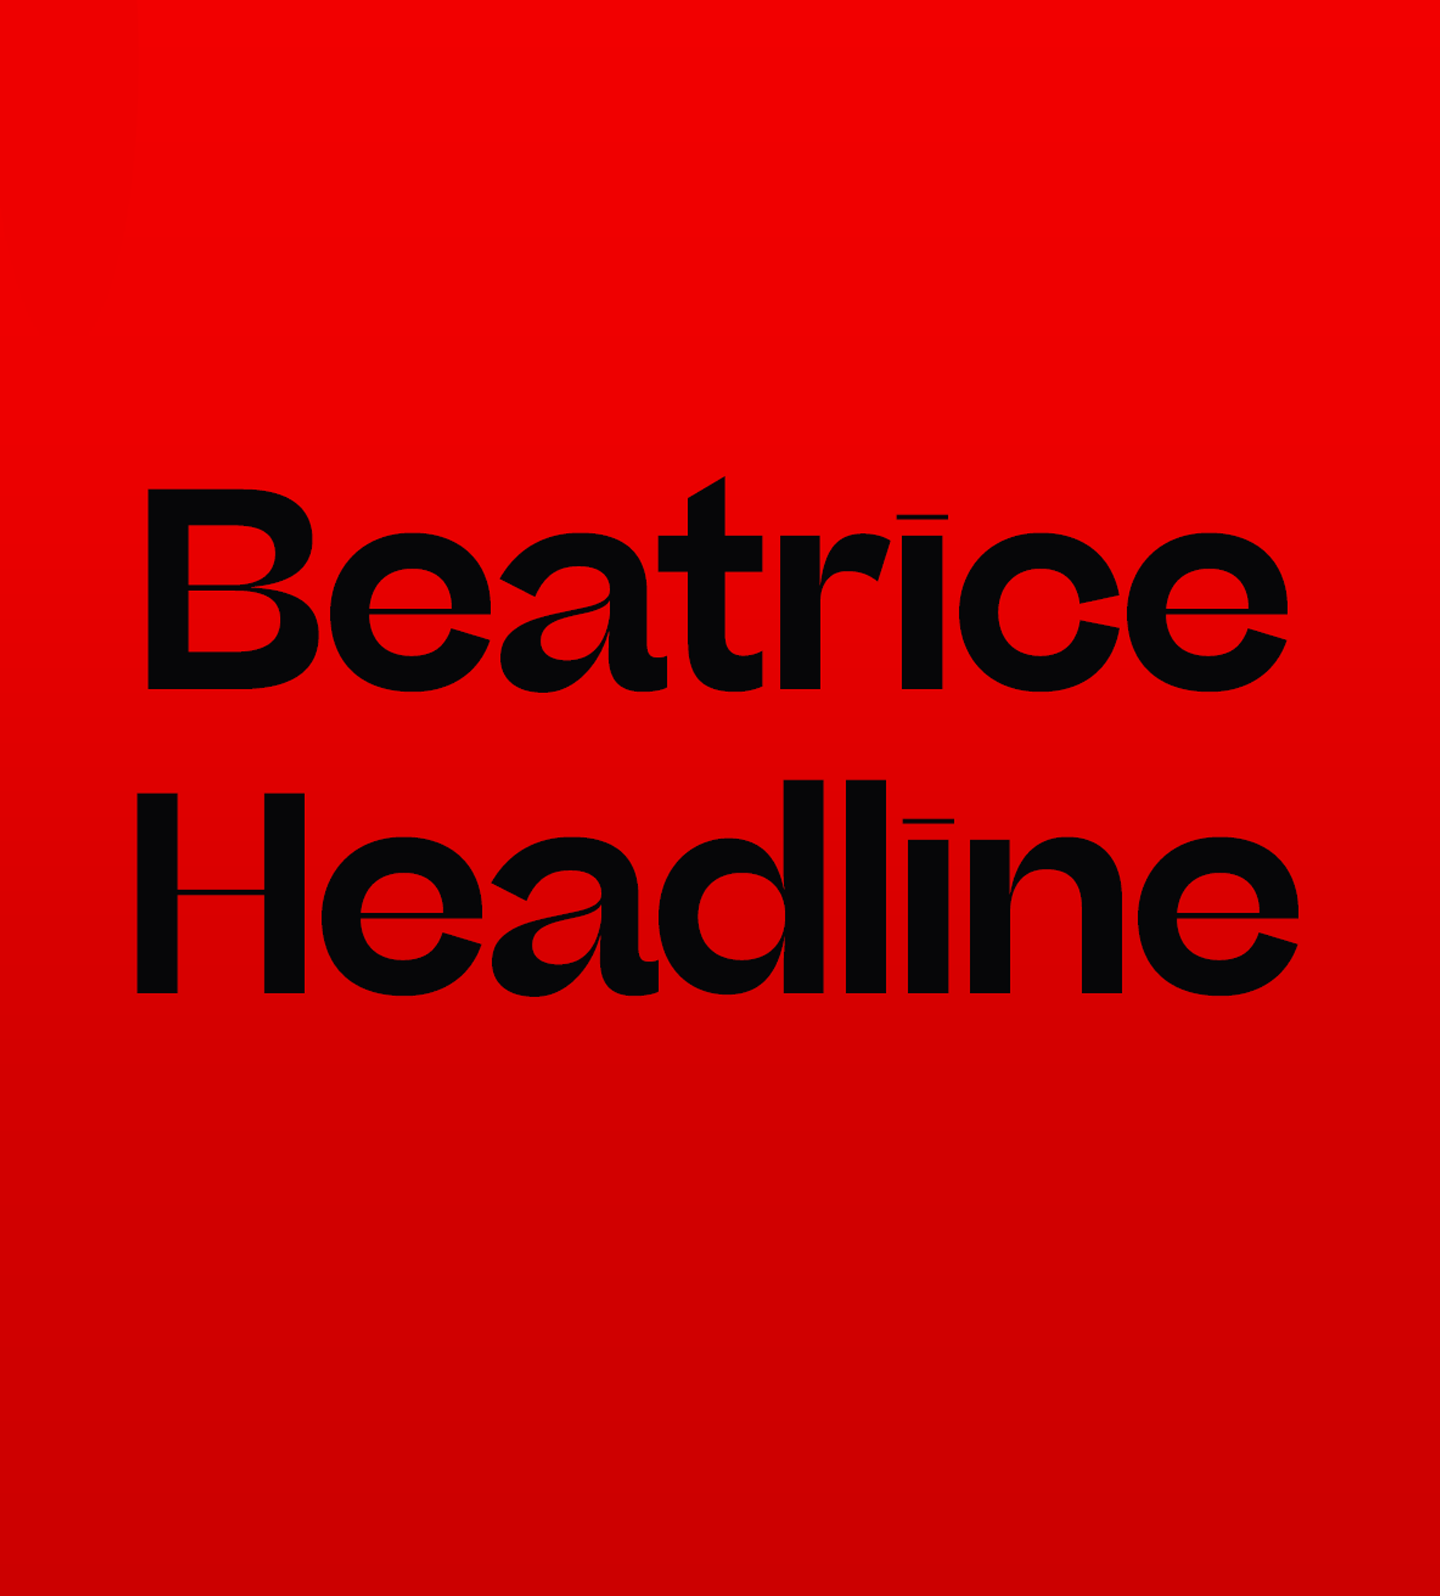 Beatrice Headline